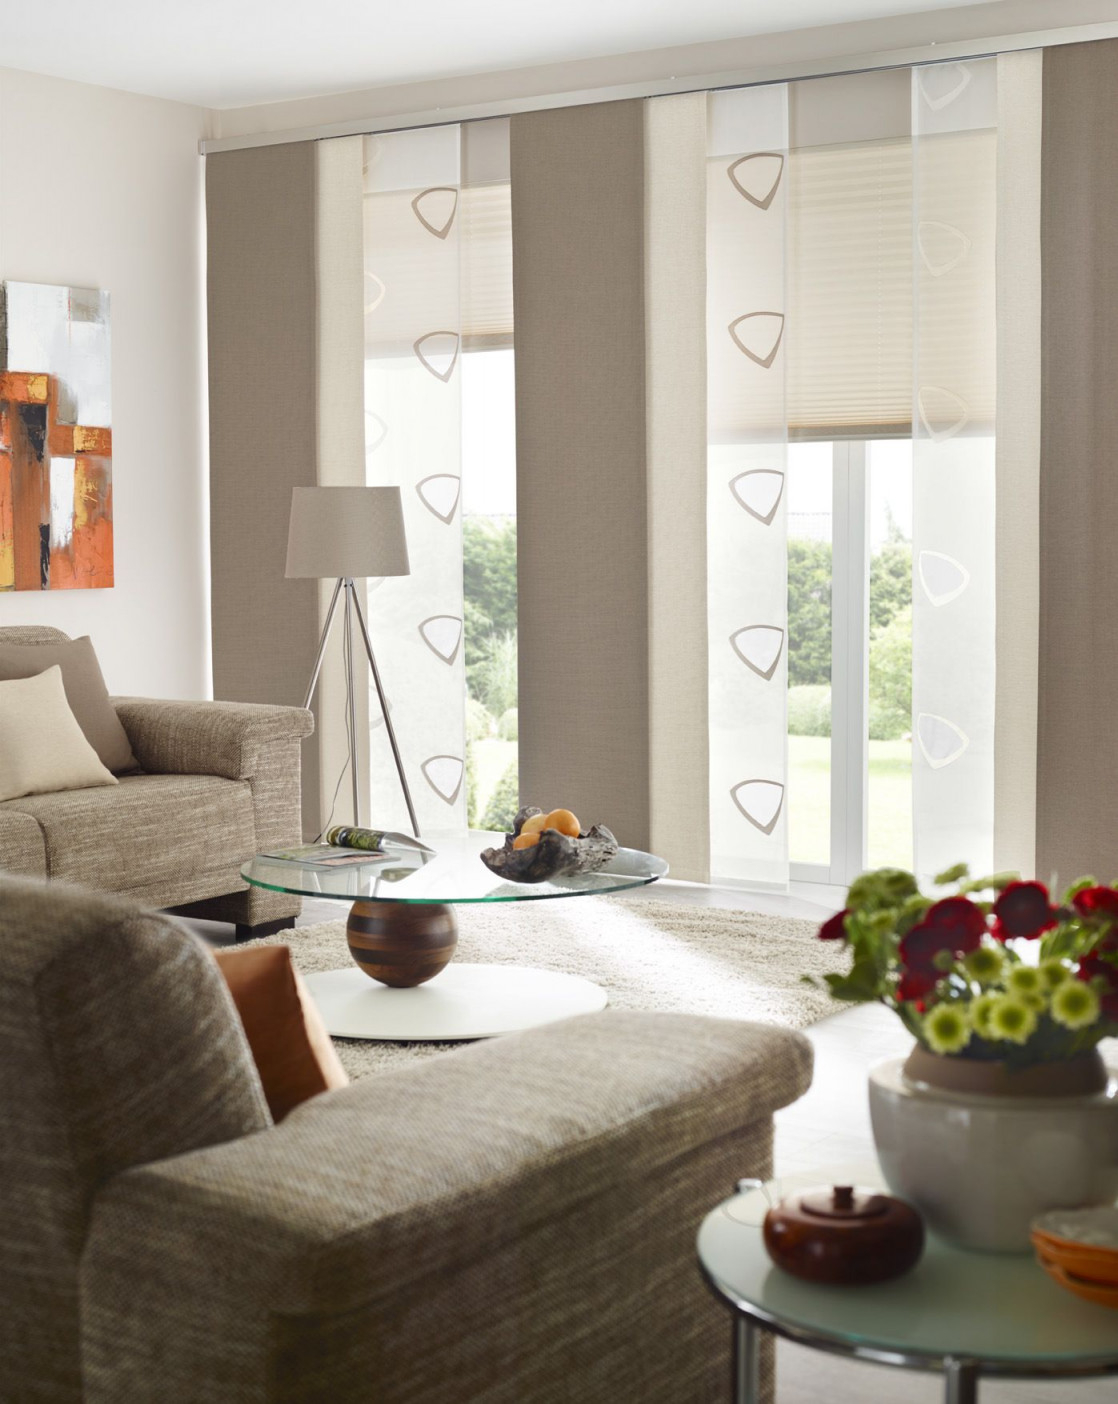 Fenster Urbansteel Gardinen Dekostoffe Vorhang von Vorschläge Für Gardinen Im Wohnzimmer Bild